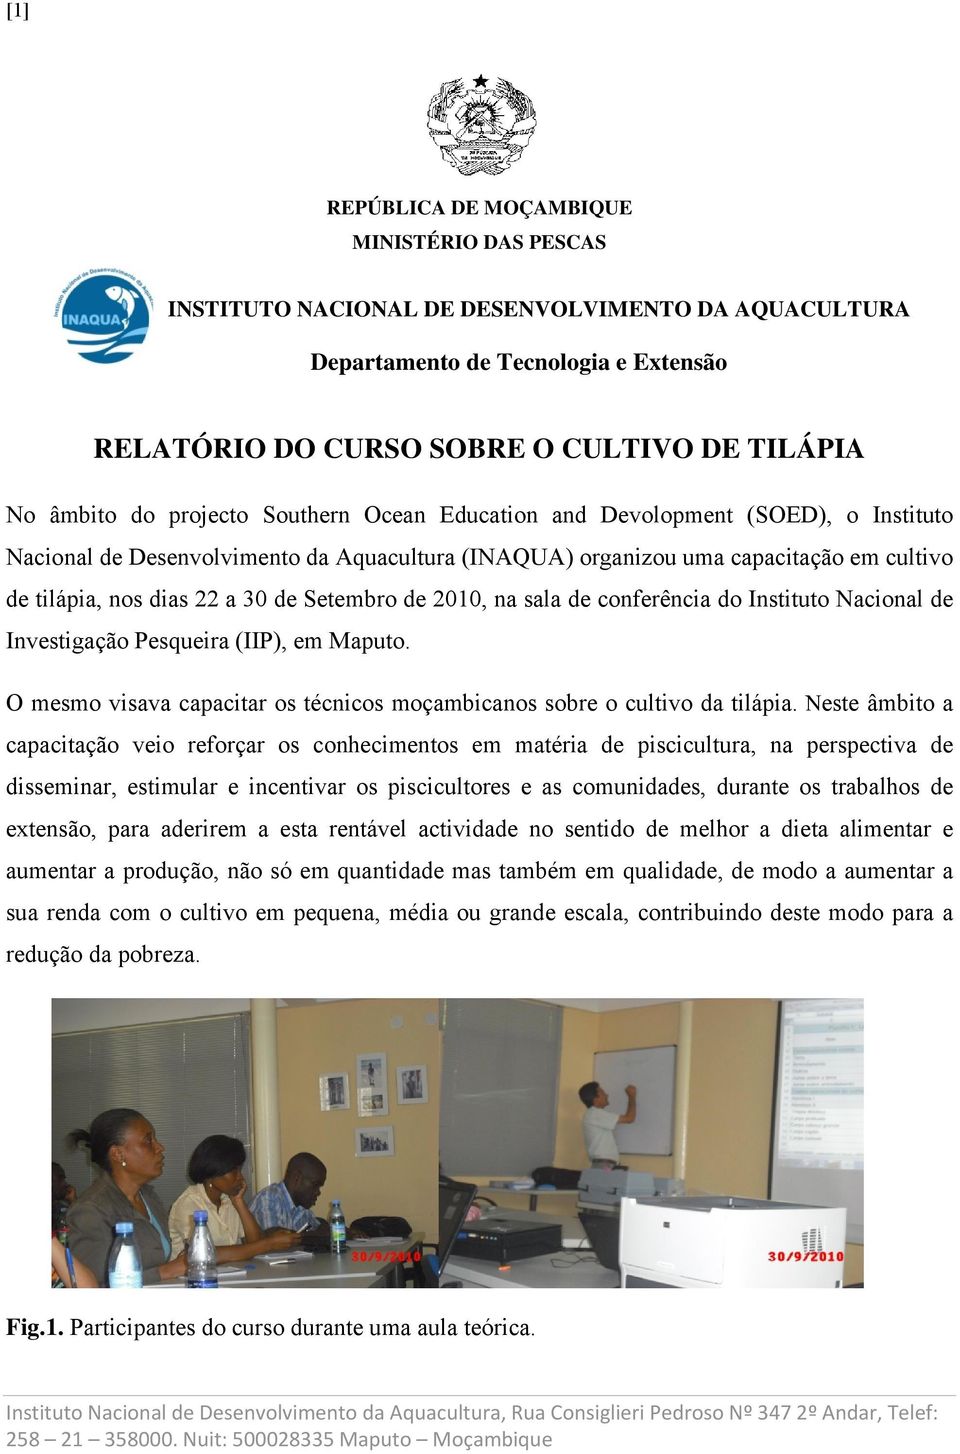 de 2010, na sala de conferência do Instituto Nacional de Investigação Pesqueira (IIP), em Maputo. O mesmo visava capacitar os técnicos moçambicanos sobre o cultivo da tilápia.